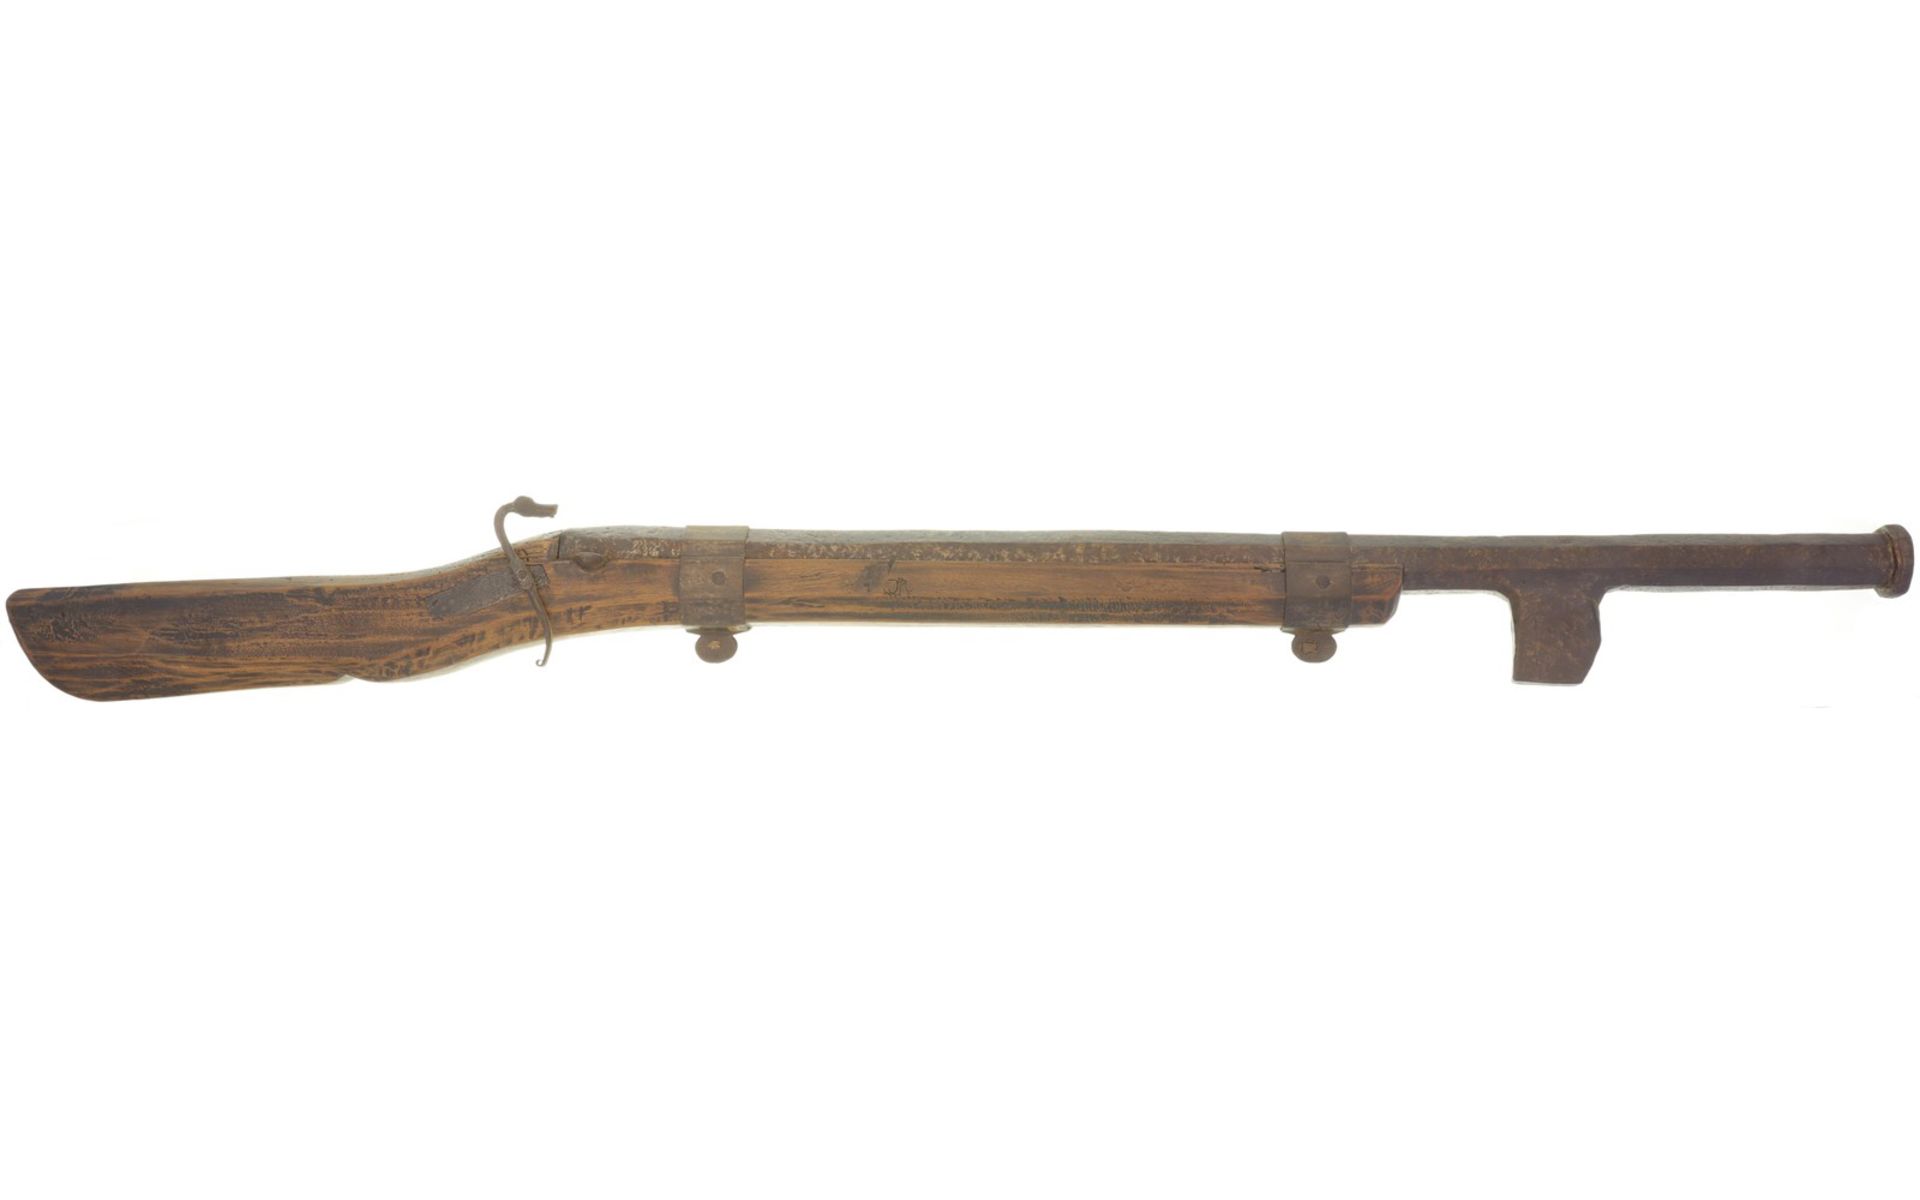 Luntenschloss-Hakenwallbüchse, um 1500, Kal. 28mm